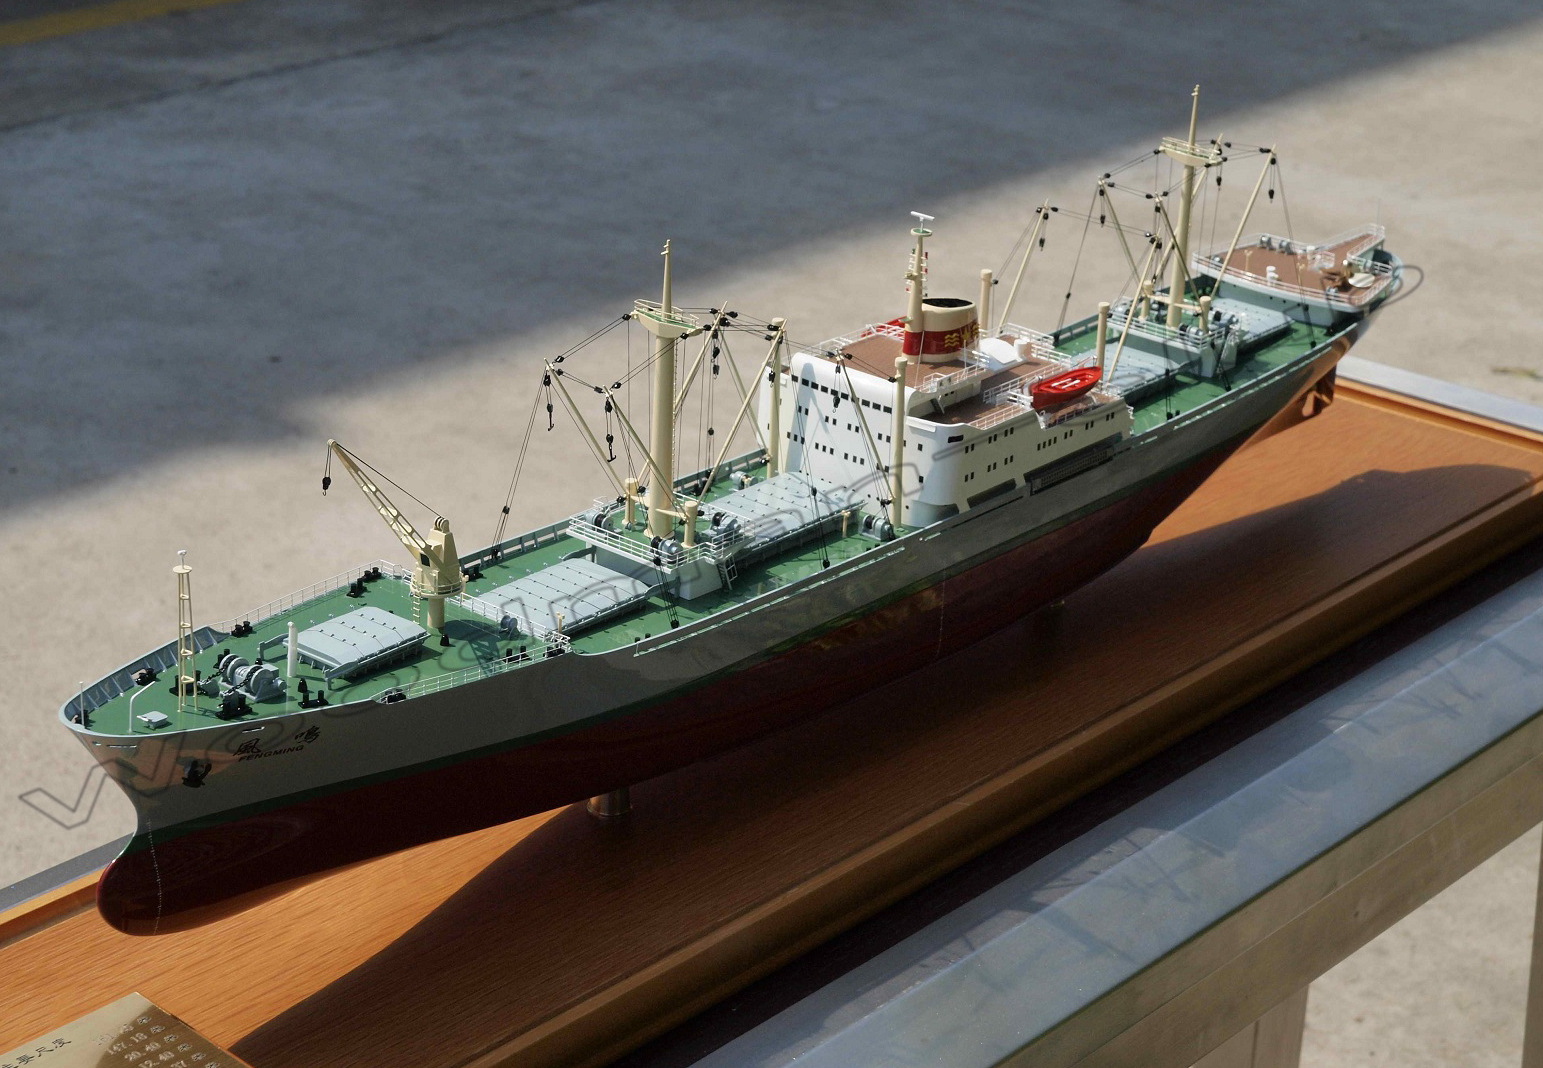 大型バルク積み貨物船超精密模型完成品、ファイバーグラス製完成模型、大型バルク積み貨物船精密艦船模型完成品台座付の製作と通販専門店 ウッドマンクラブ